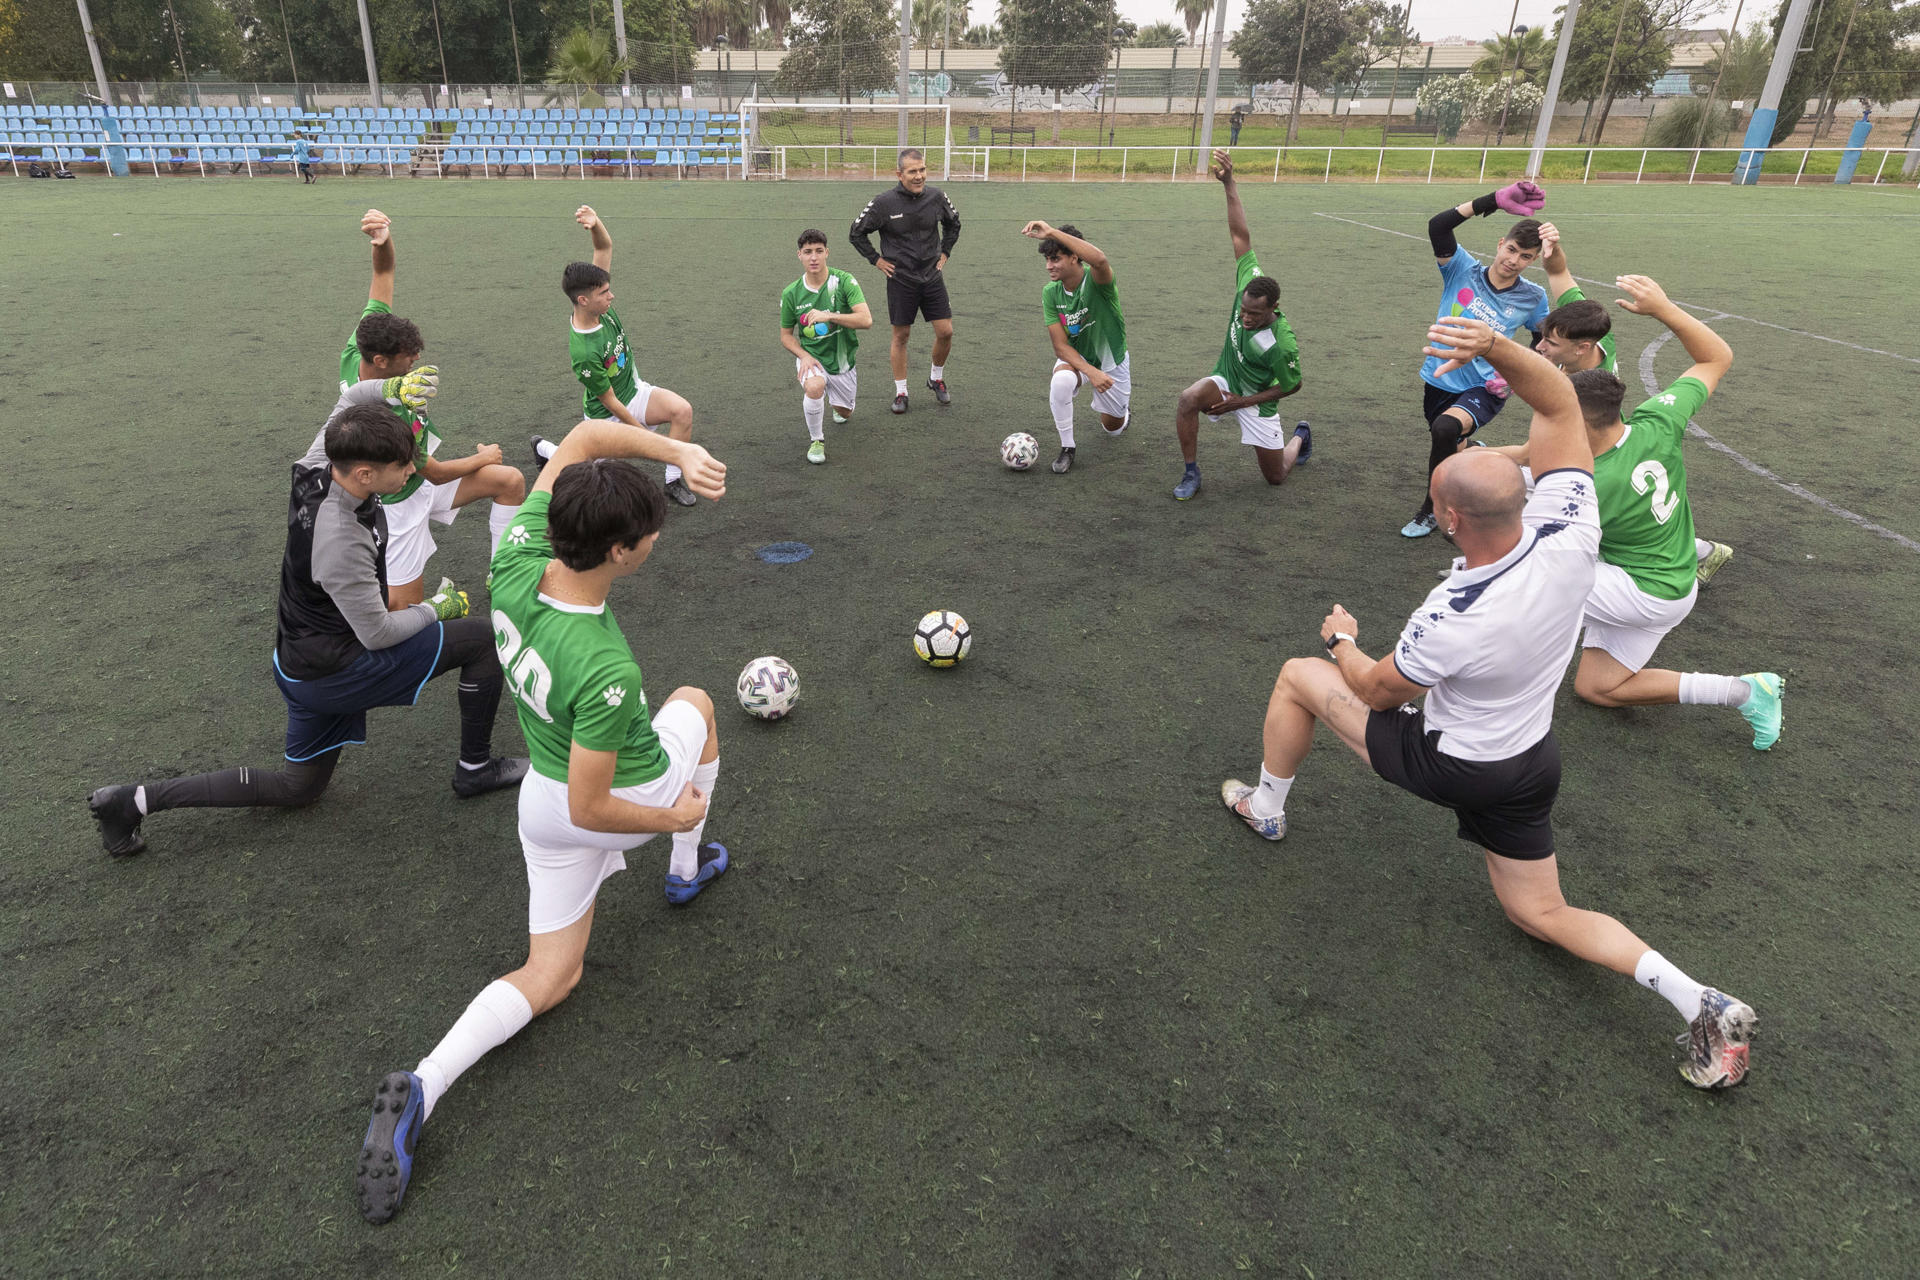 Los jugadores del Ranero Club de Fútbol de la División de Honor de juveniles, durante un entrenamiento en Murcia. EFE/ Marcial Guillén
